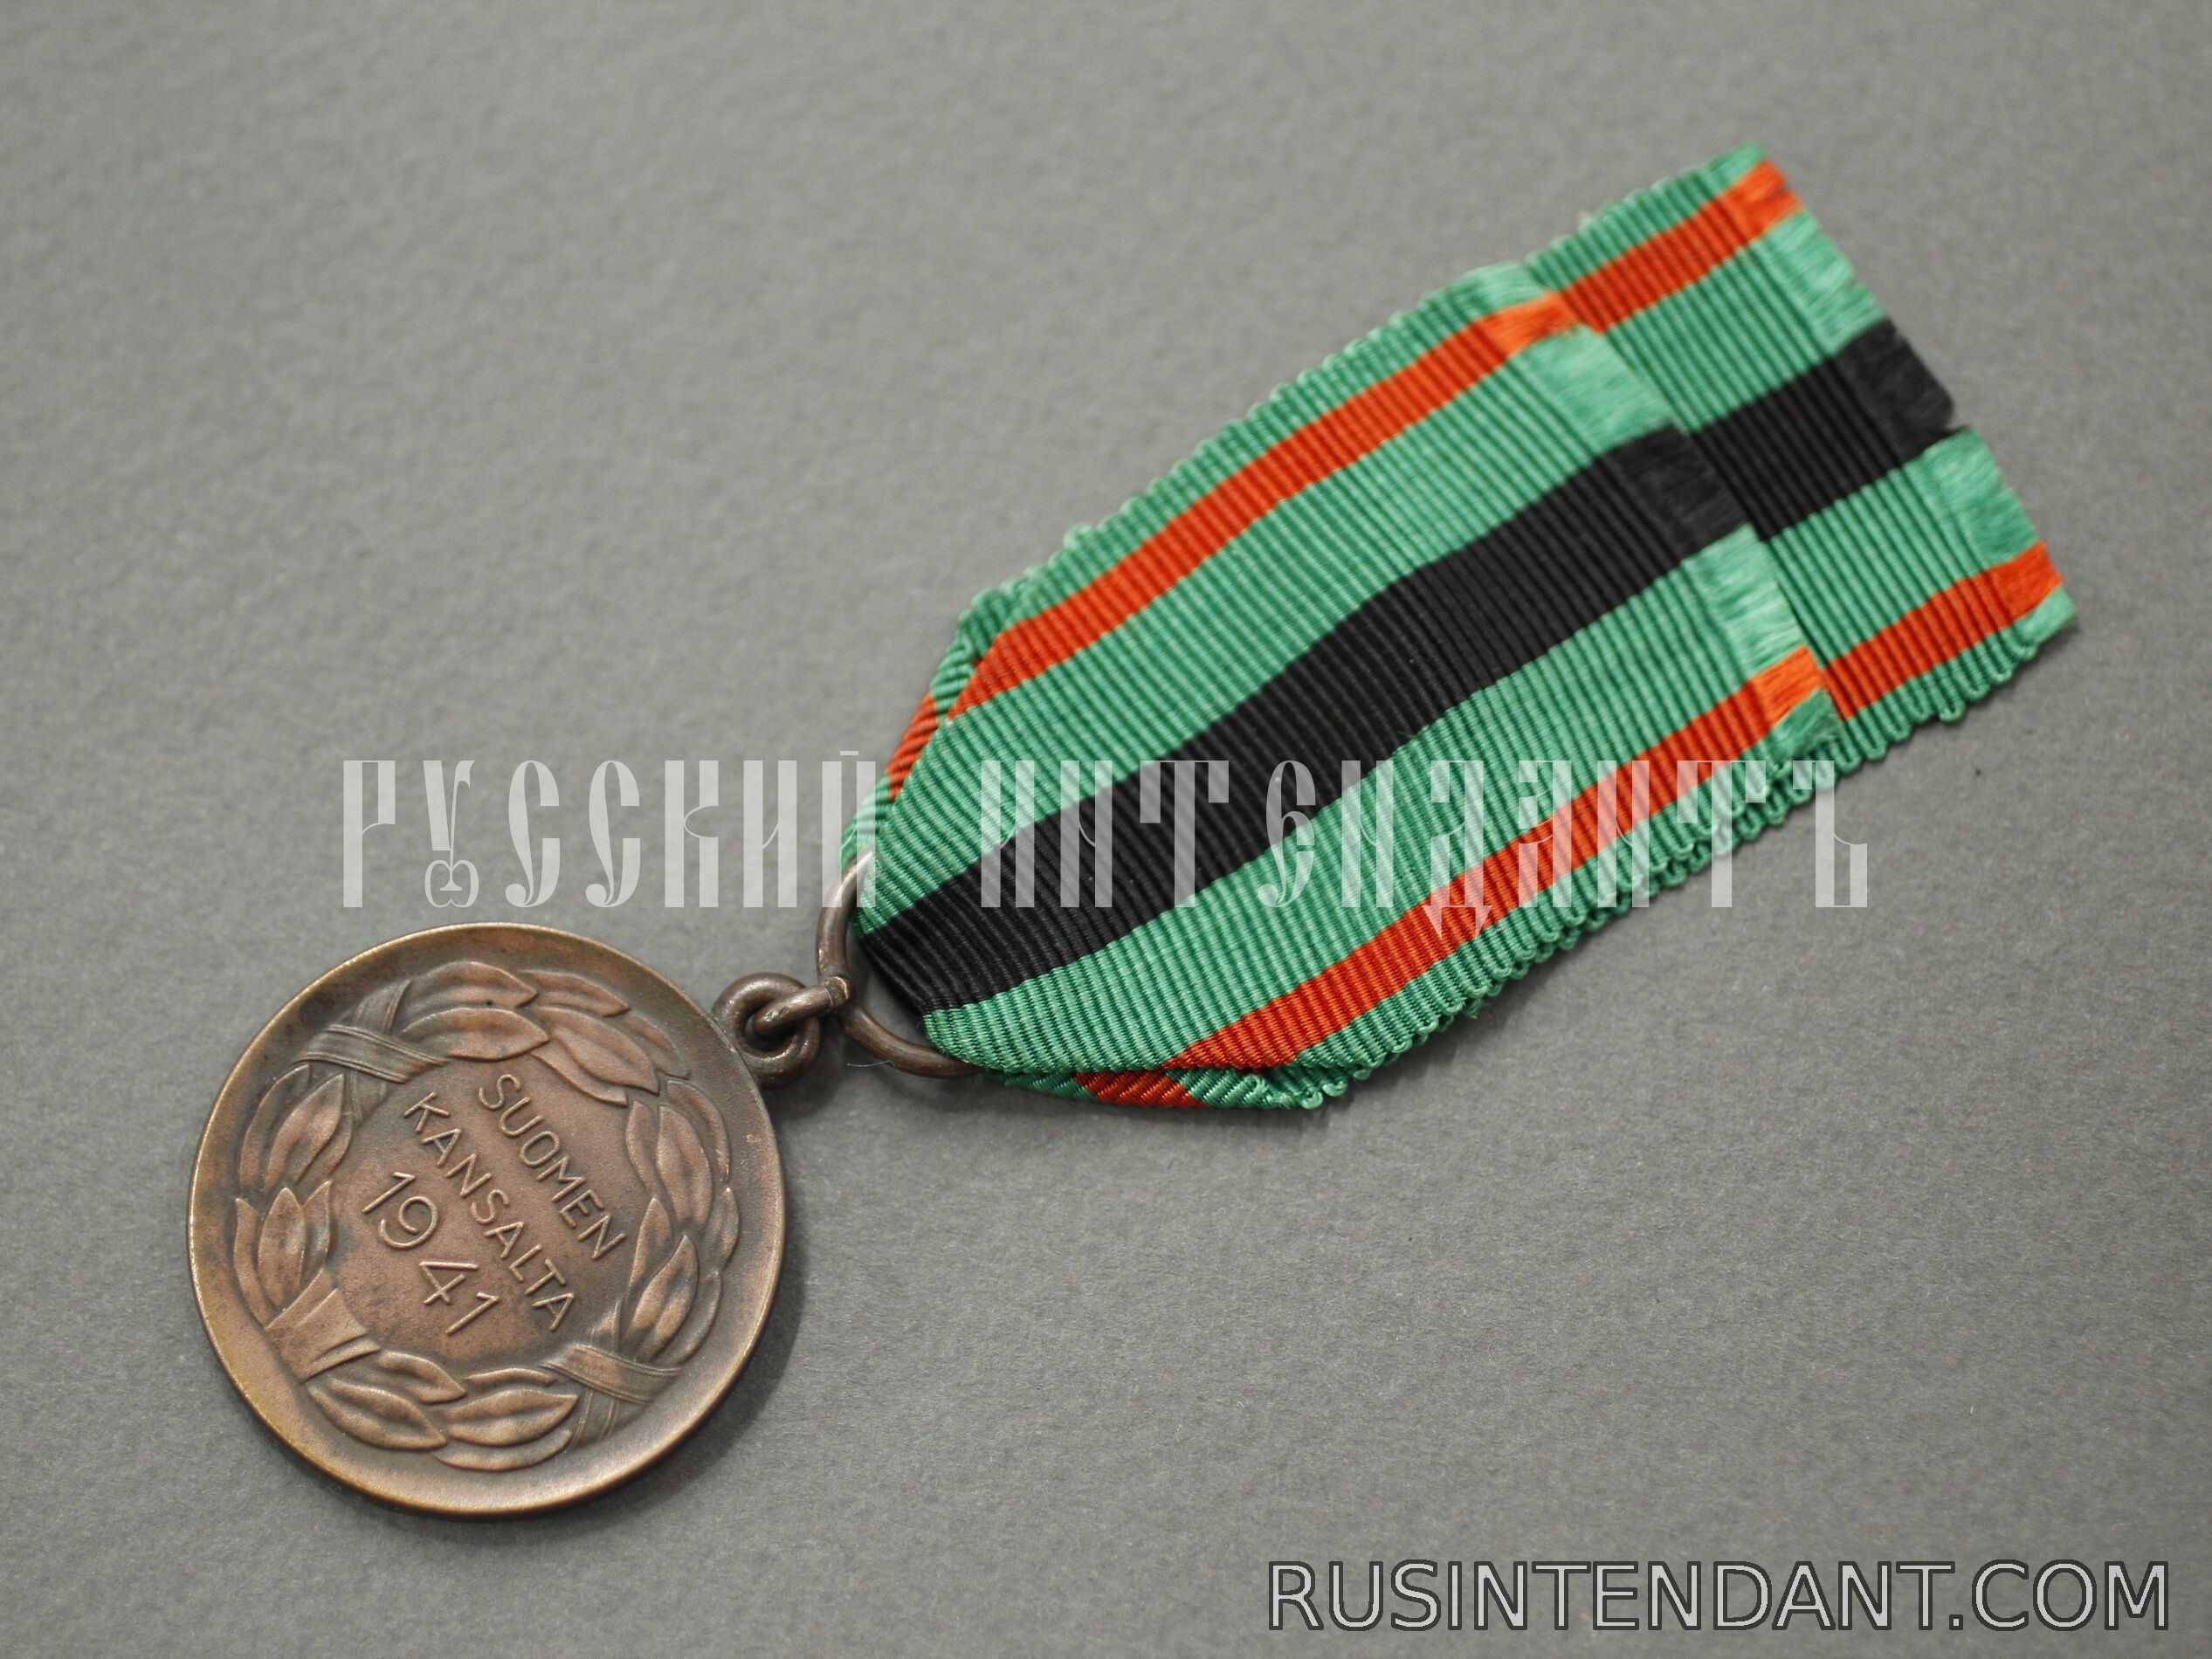 Фото 4: Медаль заслуг ордена «Крест Свободы» 2 класса 